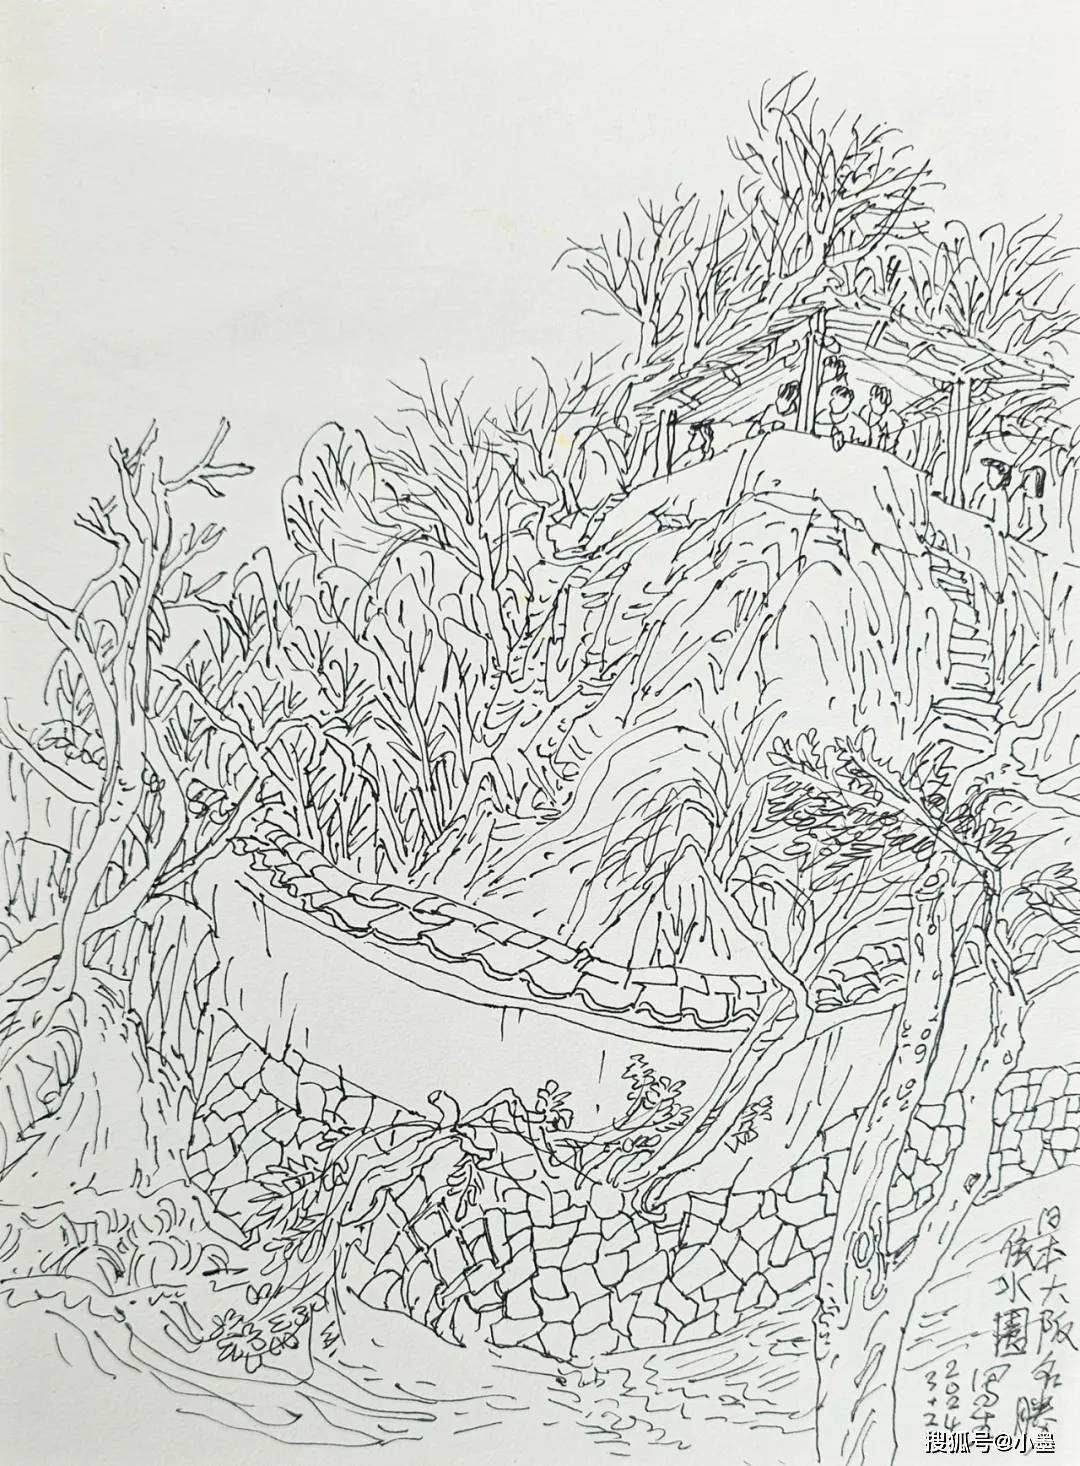 看大阪樱花飘落、和歌山白浜海浪舒卷……跟画家徐生华赴一场文艺之旅